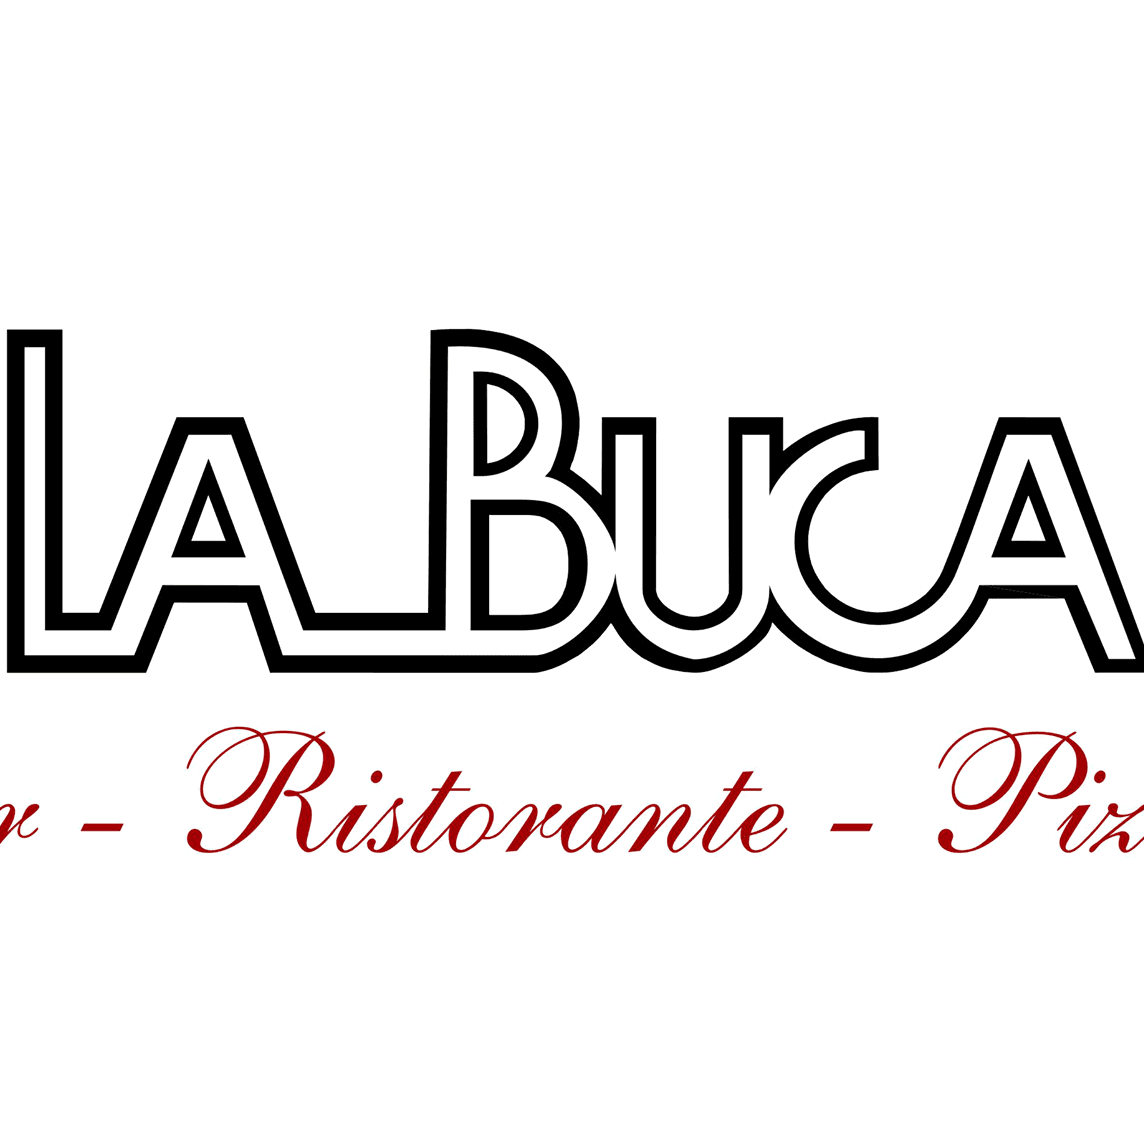 Cover ristorante